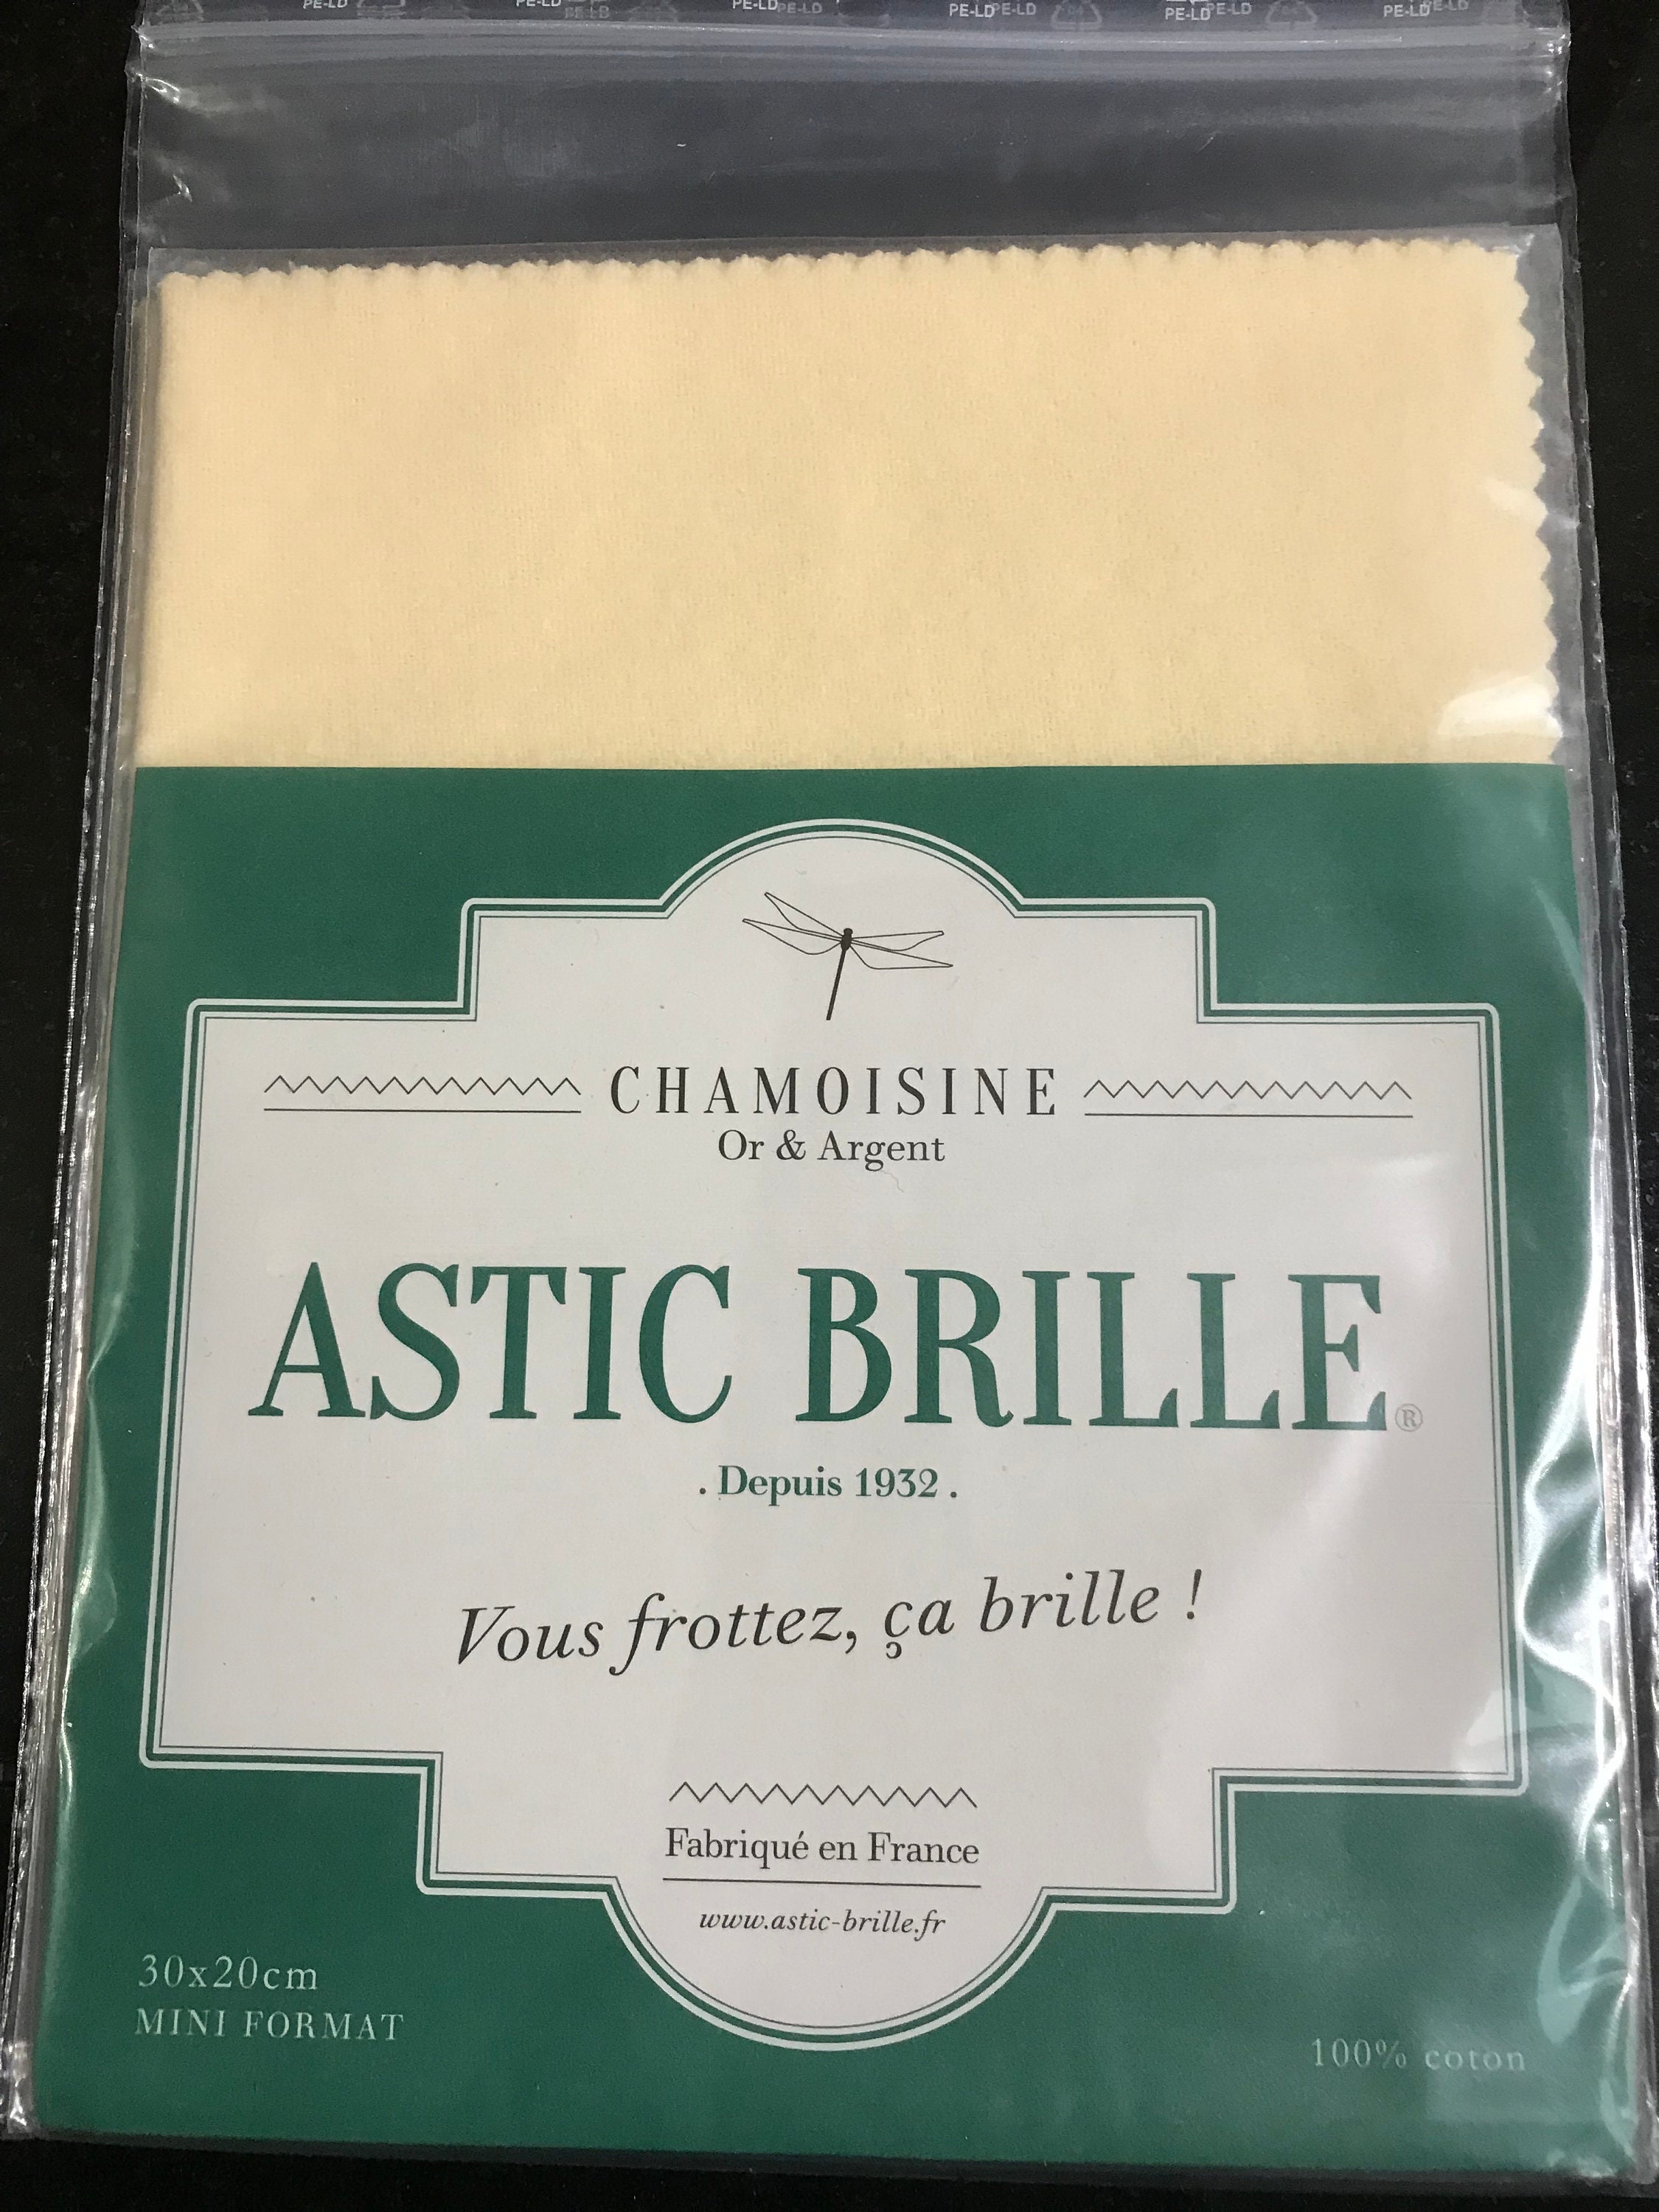 Chamoisine Astic Brille – Argent – Petit